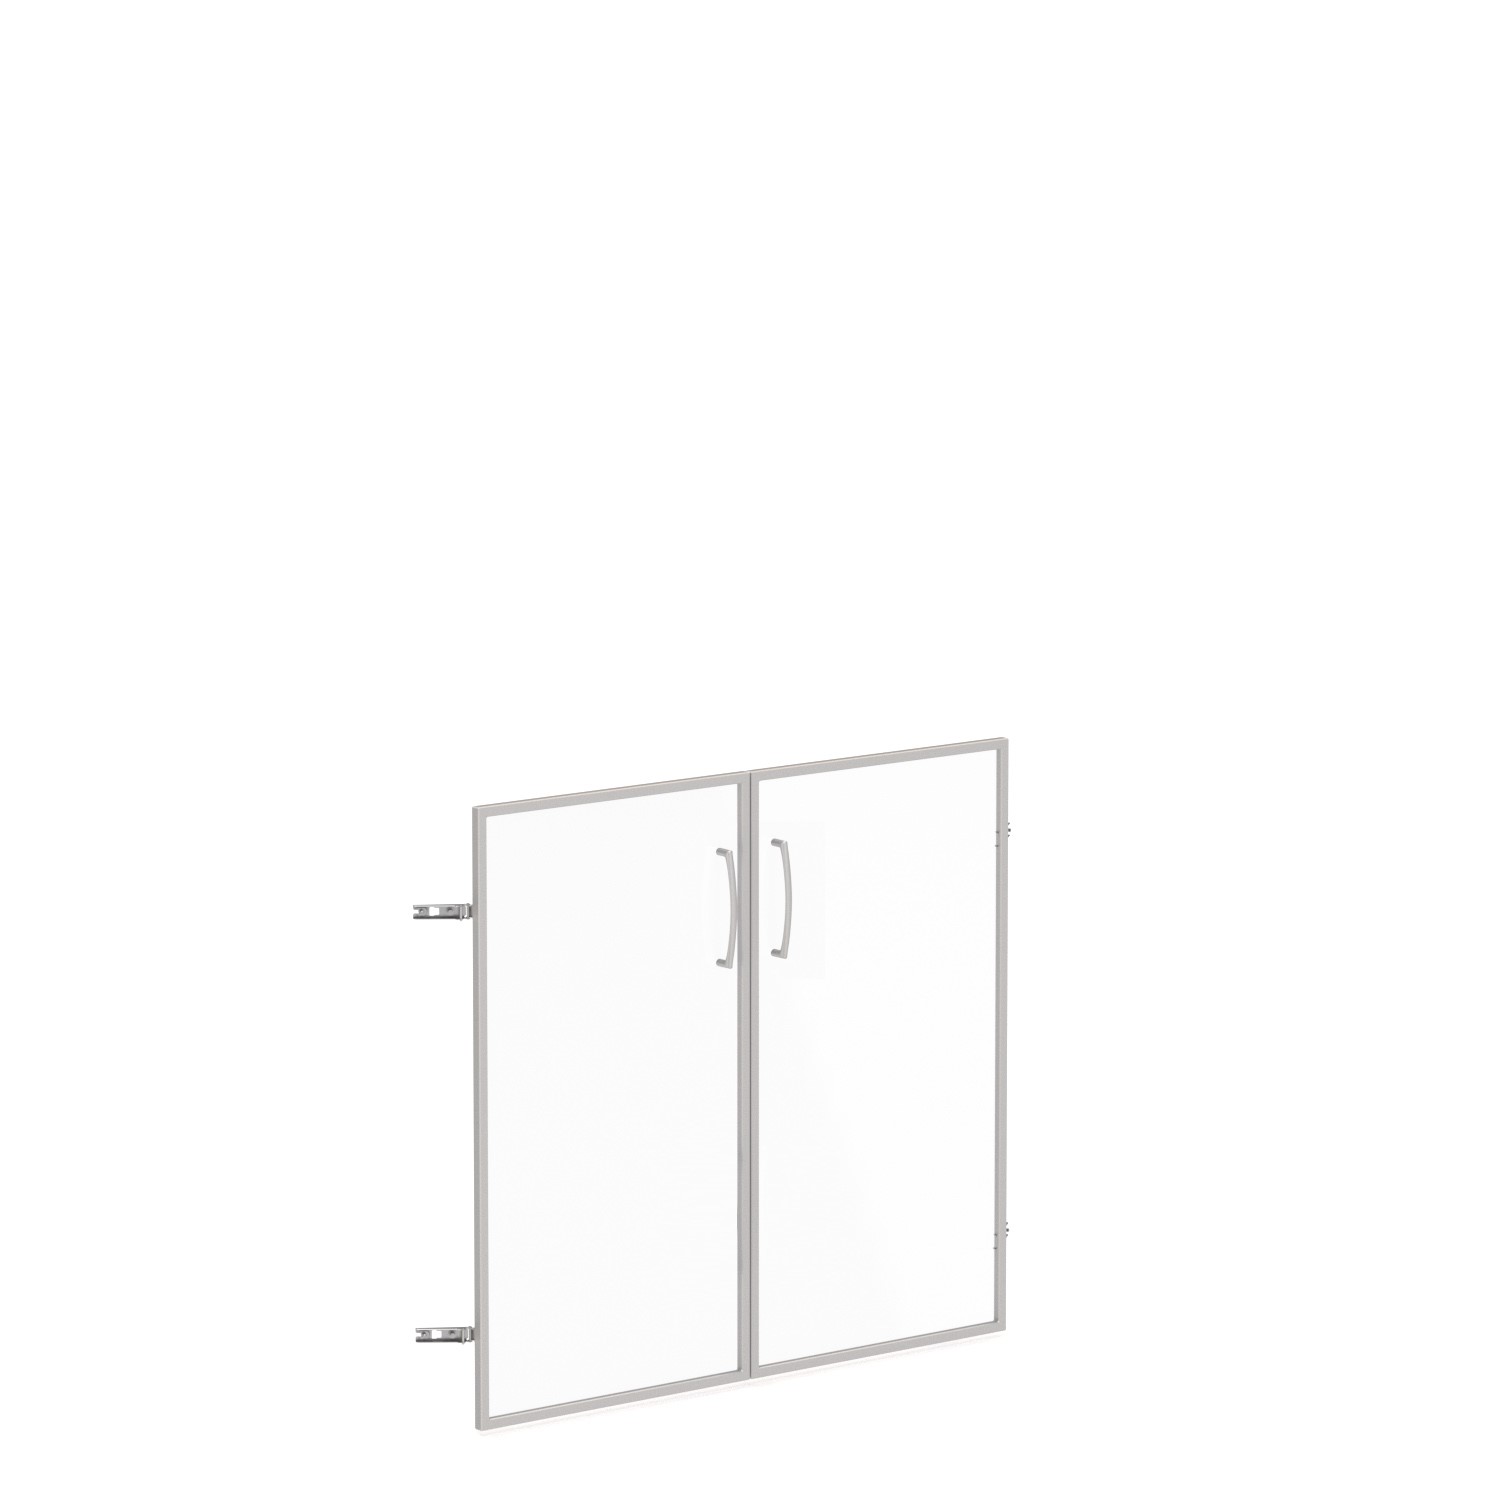 Skleněné dveře v AL rámu, výška 33,7cm, šířka 78,6/118,6cm